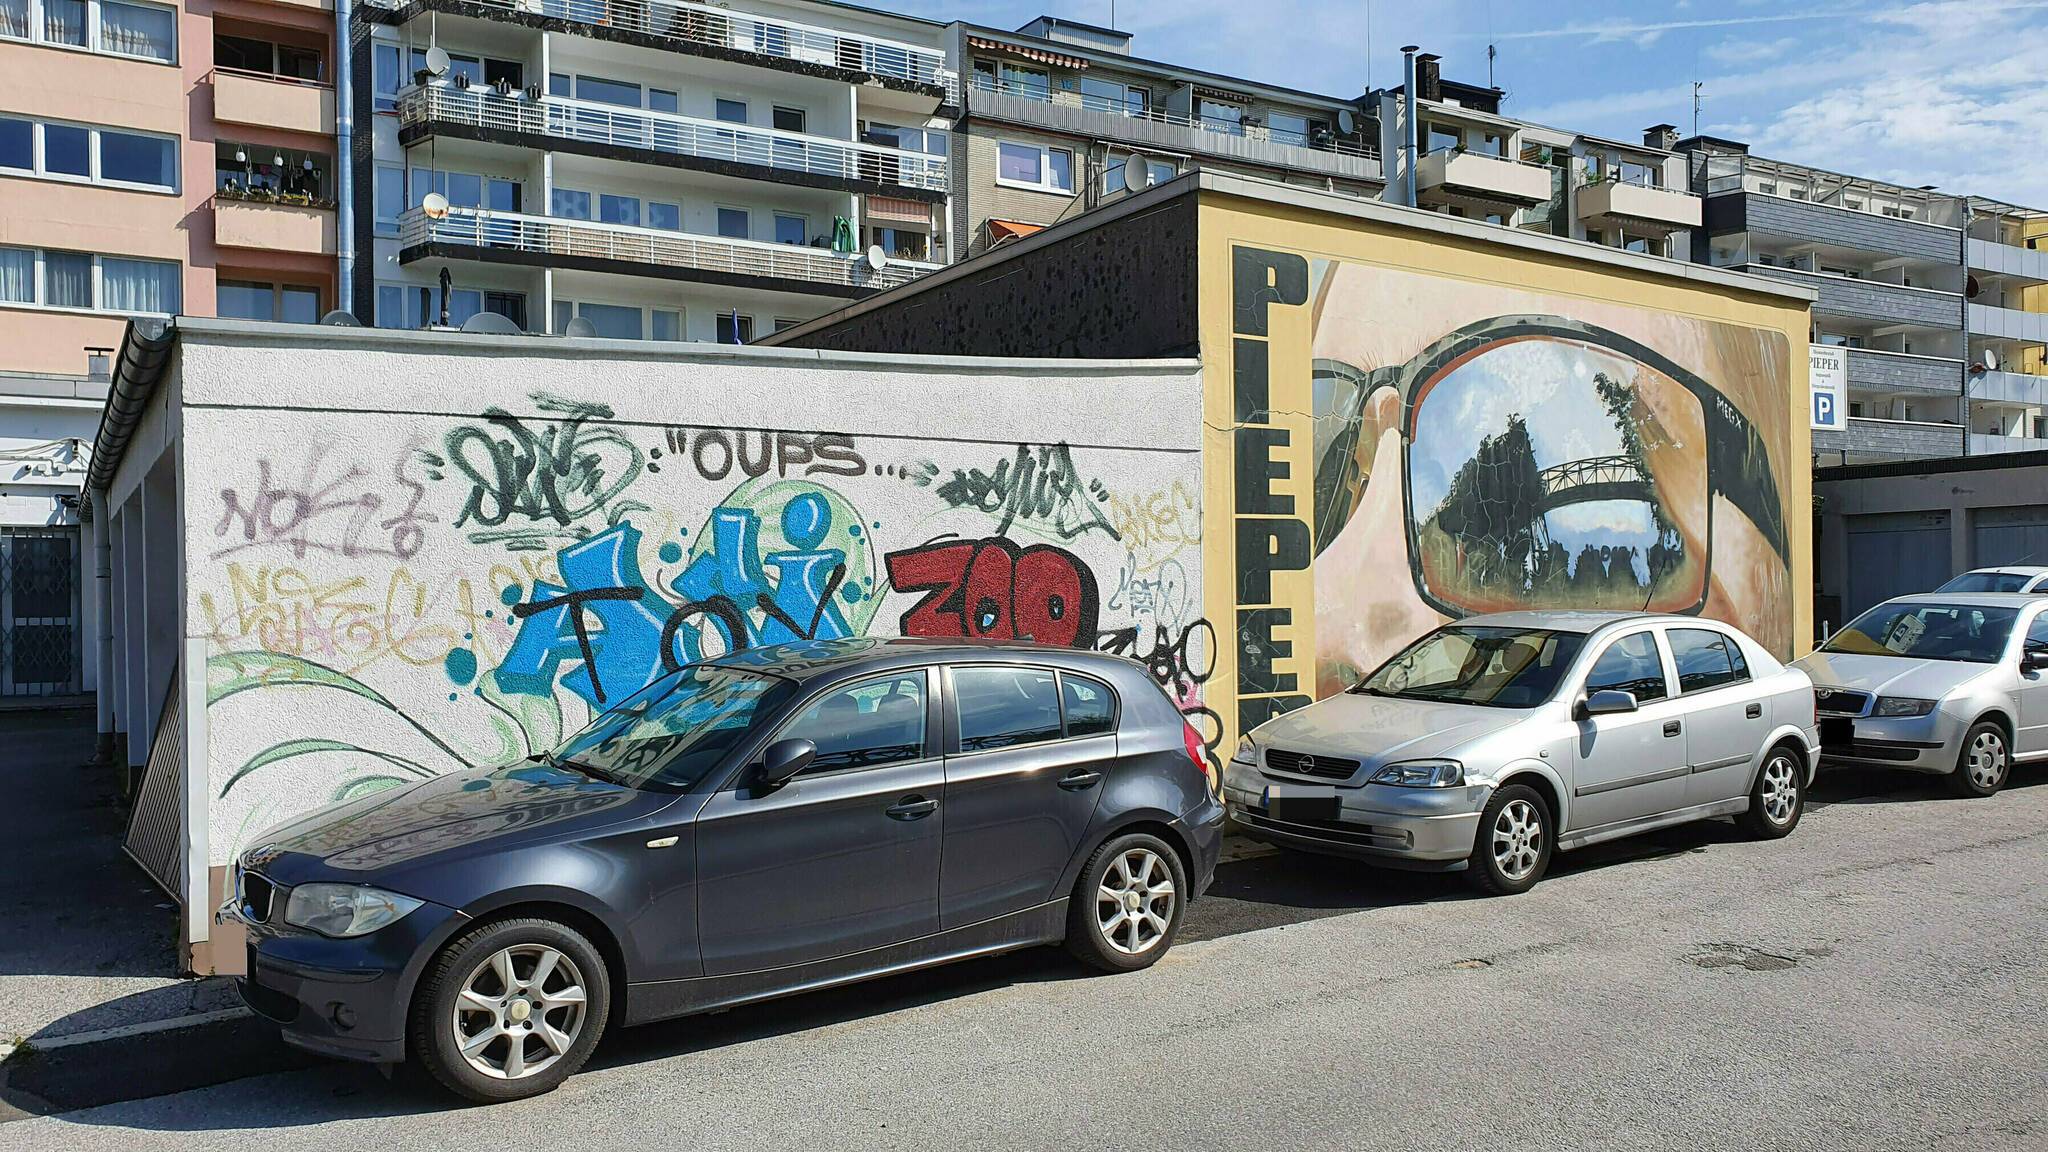 Schöneberger Ufer soll zur Street-Art-Galerie werden